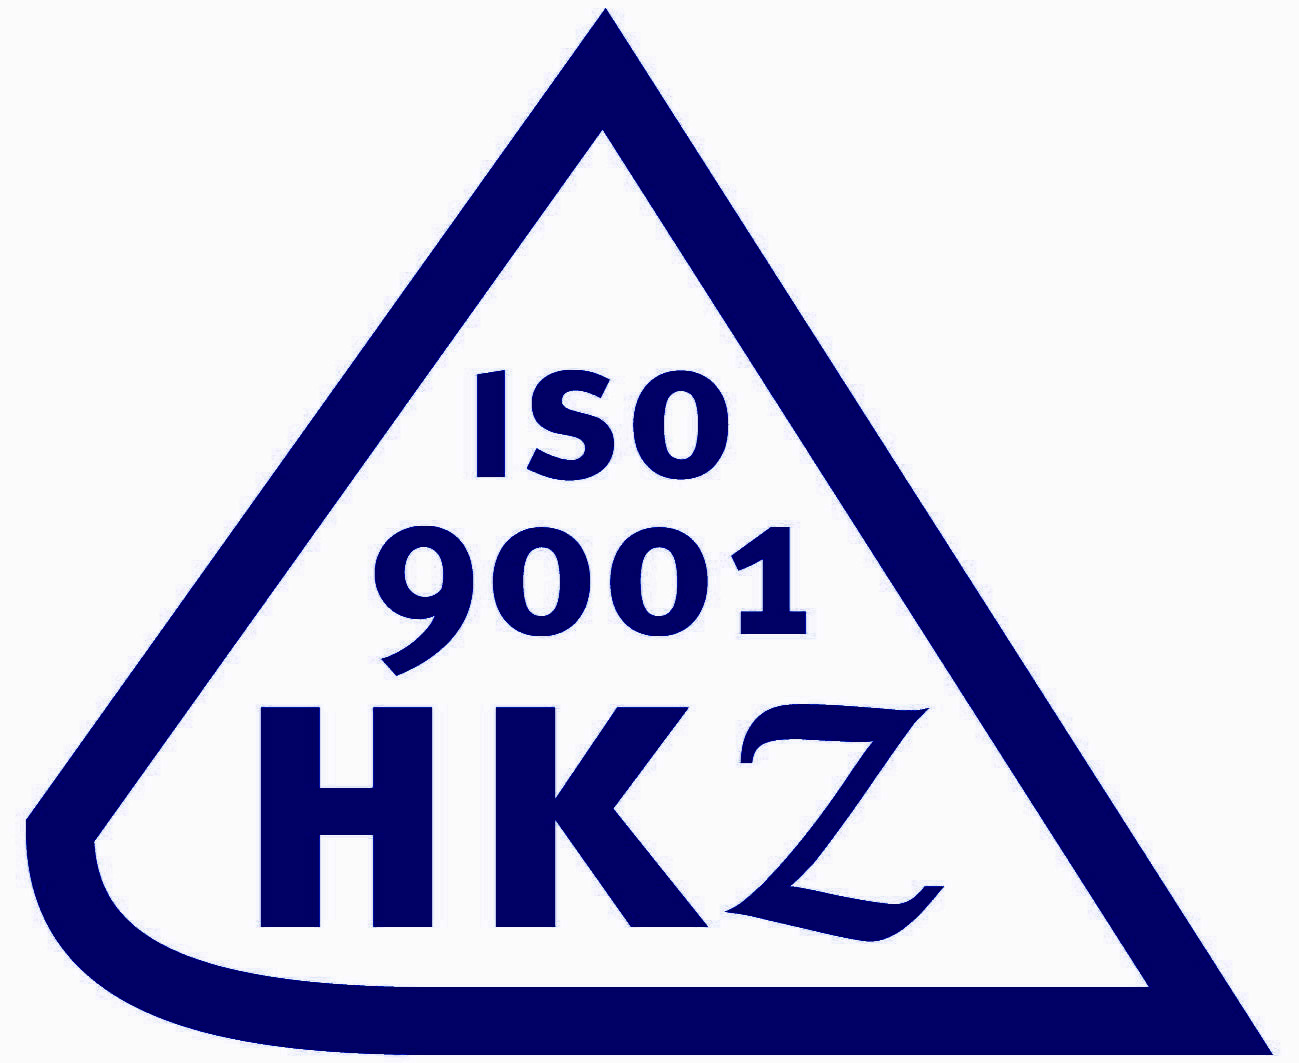 HKZ logo pms 281 c